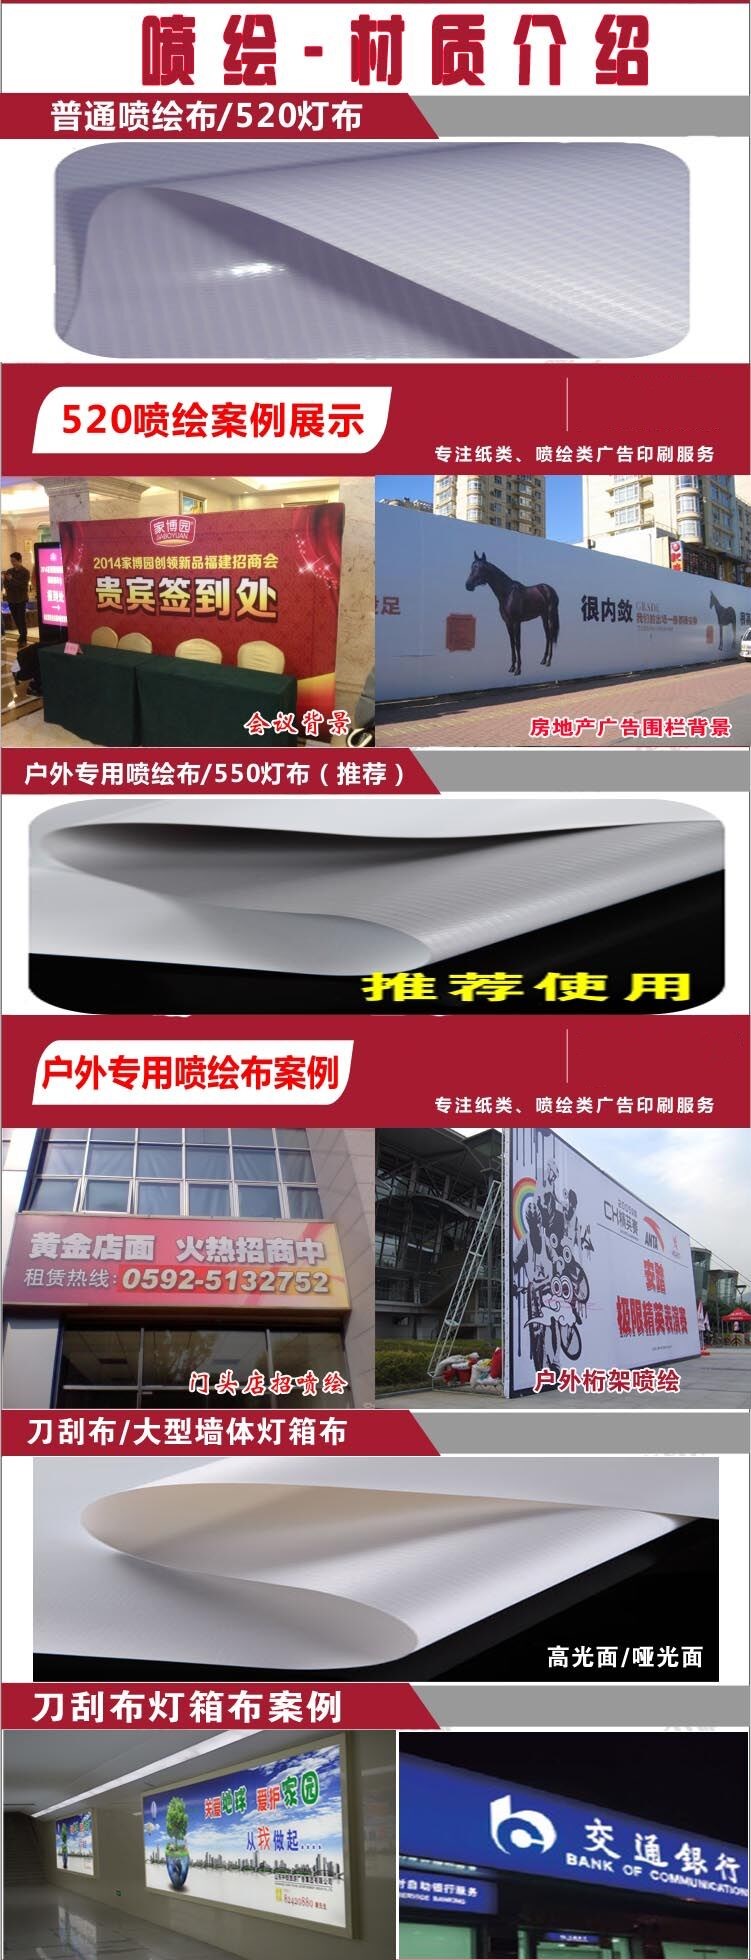 武漢廣告牌制作|廣告牌設計|戶外廣告牌|戶外廣告牌|戶外廣告公司|戶外廣告設計|噴繪寫真制作